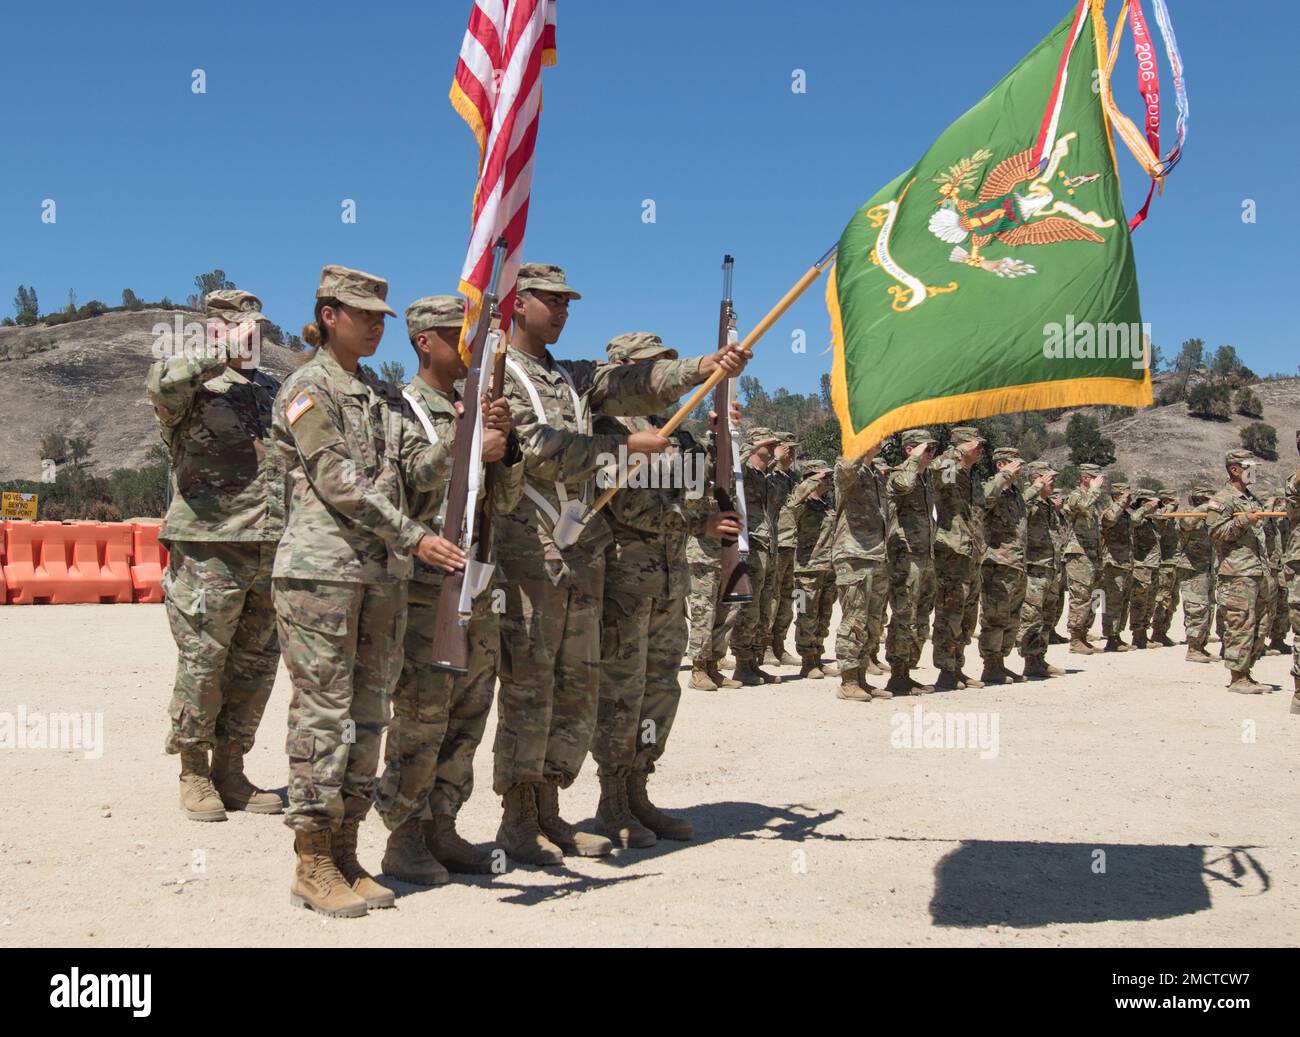 Der Farbenwächter des 324. Militärpolizeibataillons nimmt an der Zeremonie zum Kommandowechsel des 324. Militärbataillons hier in Fort Hunter Liggett, Kalifornien, Teil. Stockfoto